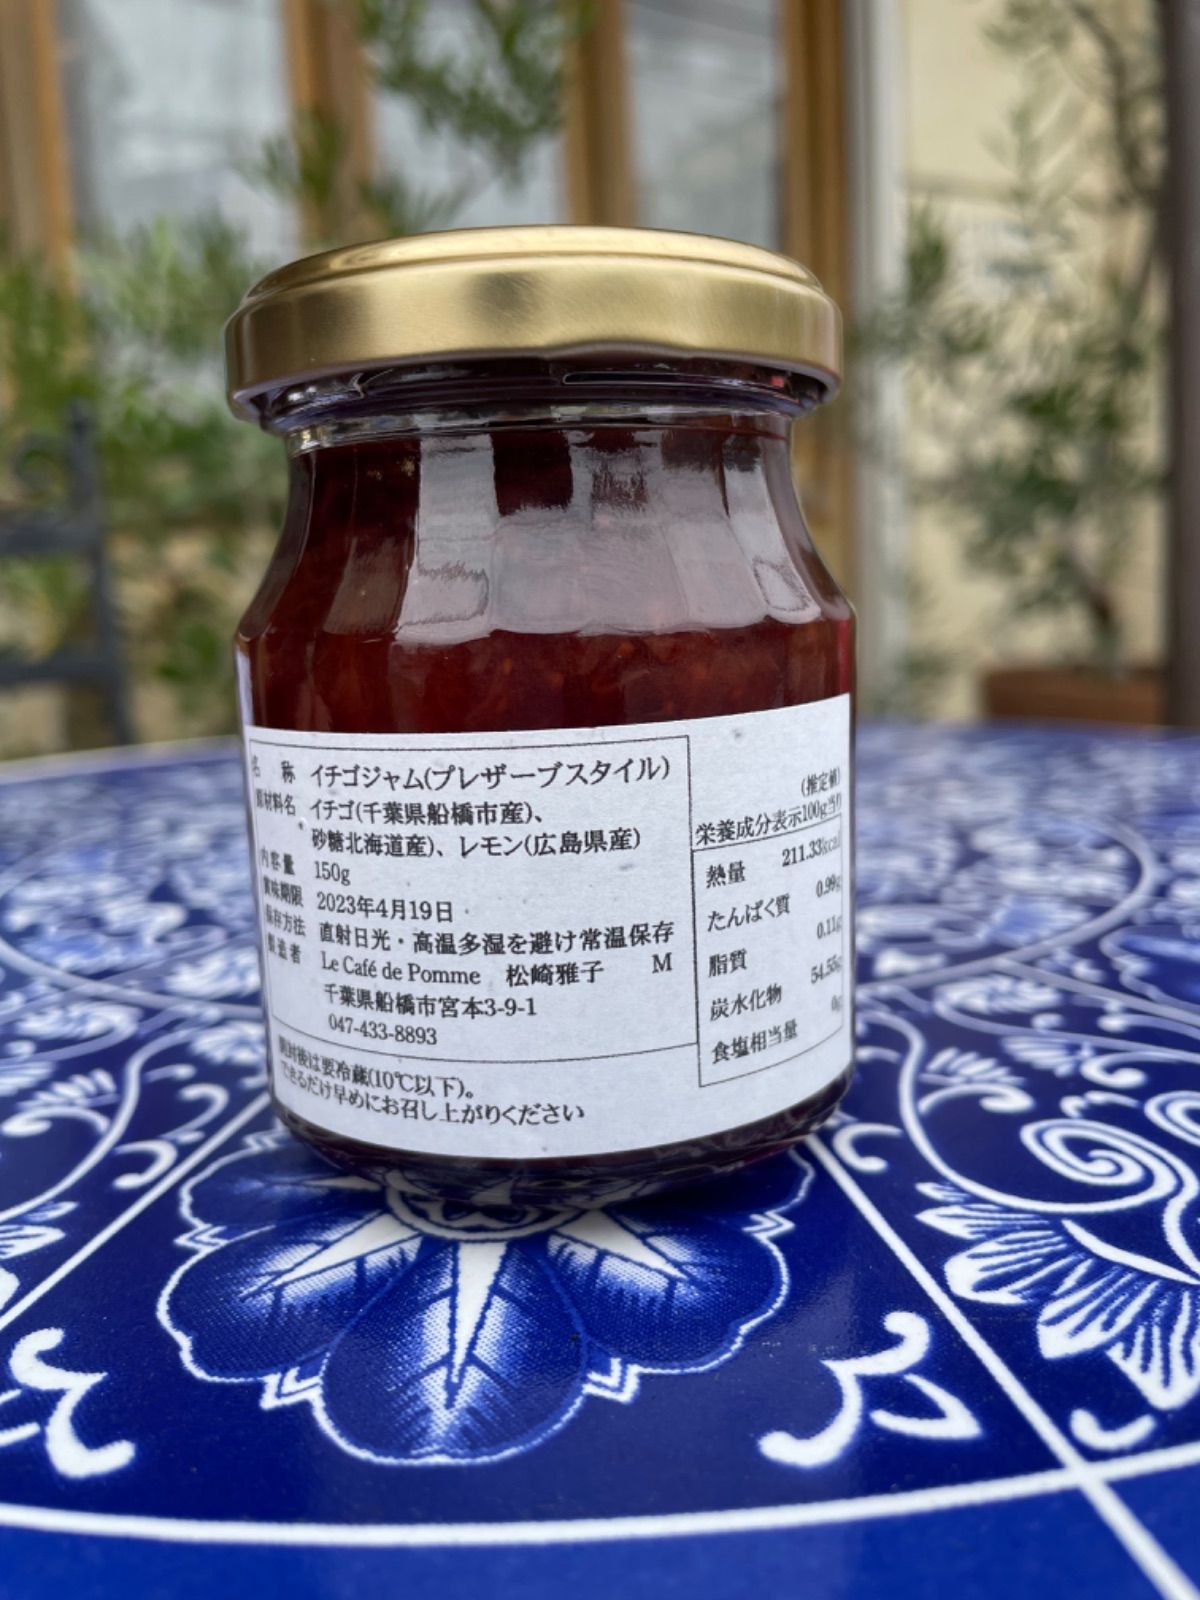 【Le cafe de pomme×市立船橋】pommeセット-2